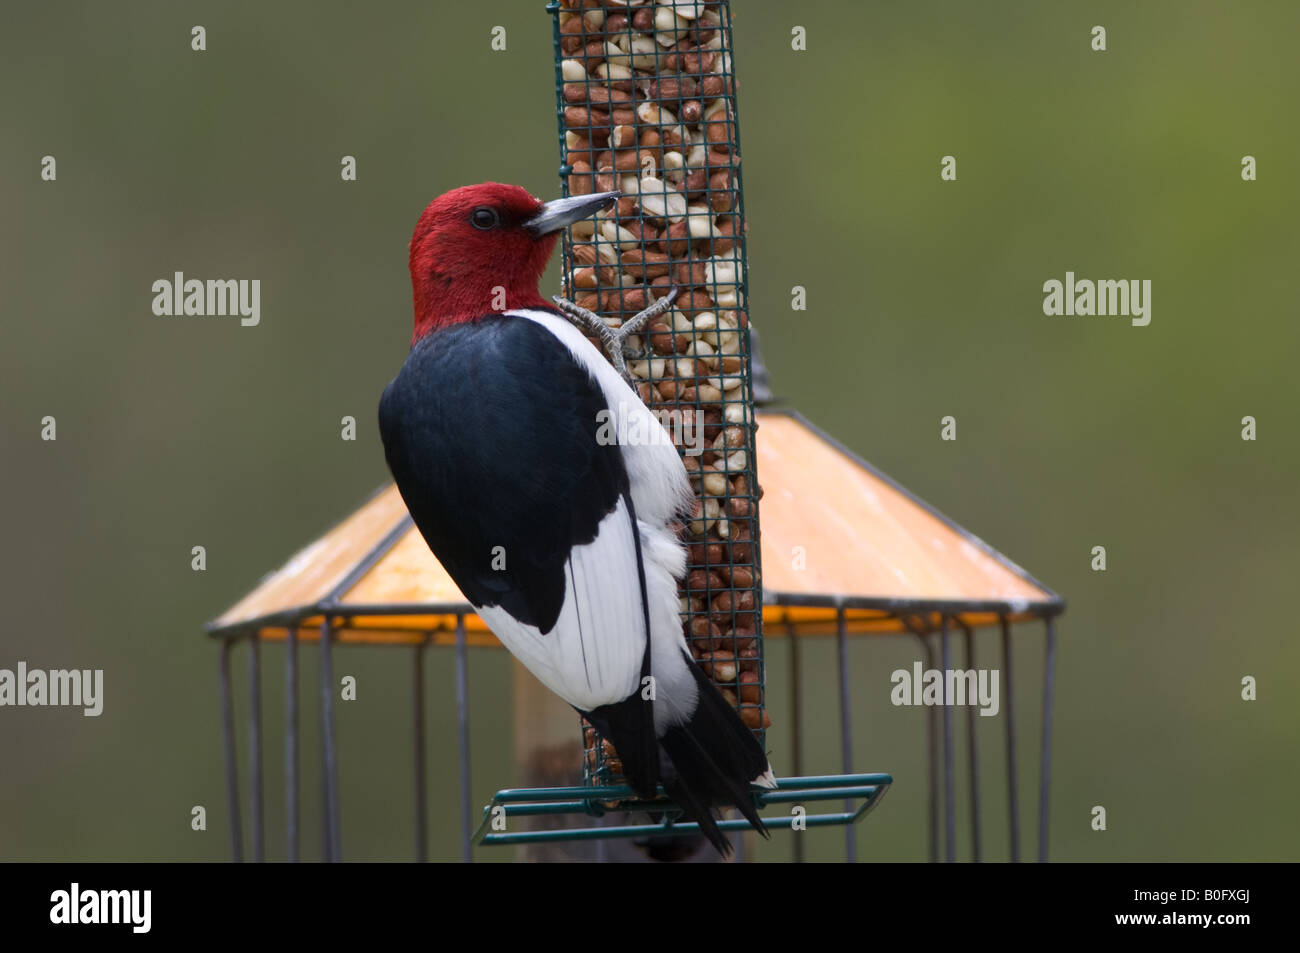 Un pájaro carpintero Red-Headed alimenta de cacahuetes desde una estación del alimentador. Foto de stock